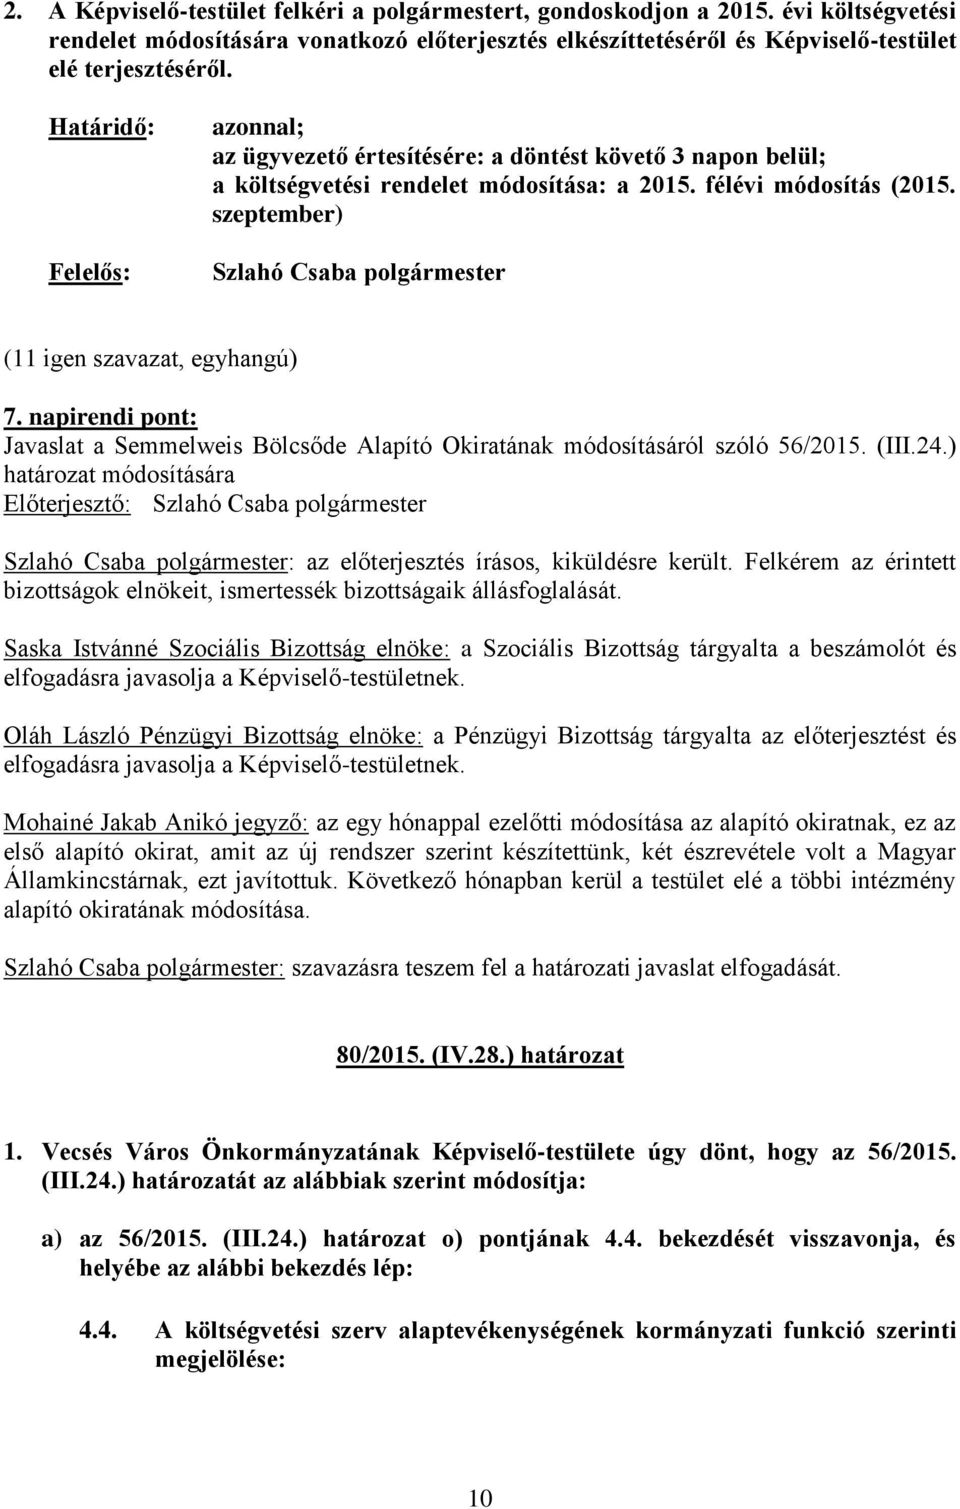 napirendi pont: Javaslat a Semmelweis Bölcsőde Alapító Okiratának módosításáról szóló 56/2015. (III.24.) határozat módosítására Szlahó Csaba polgármester: az előterjesztés írásos, kiküldésre került.